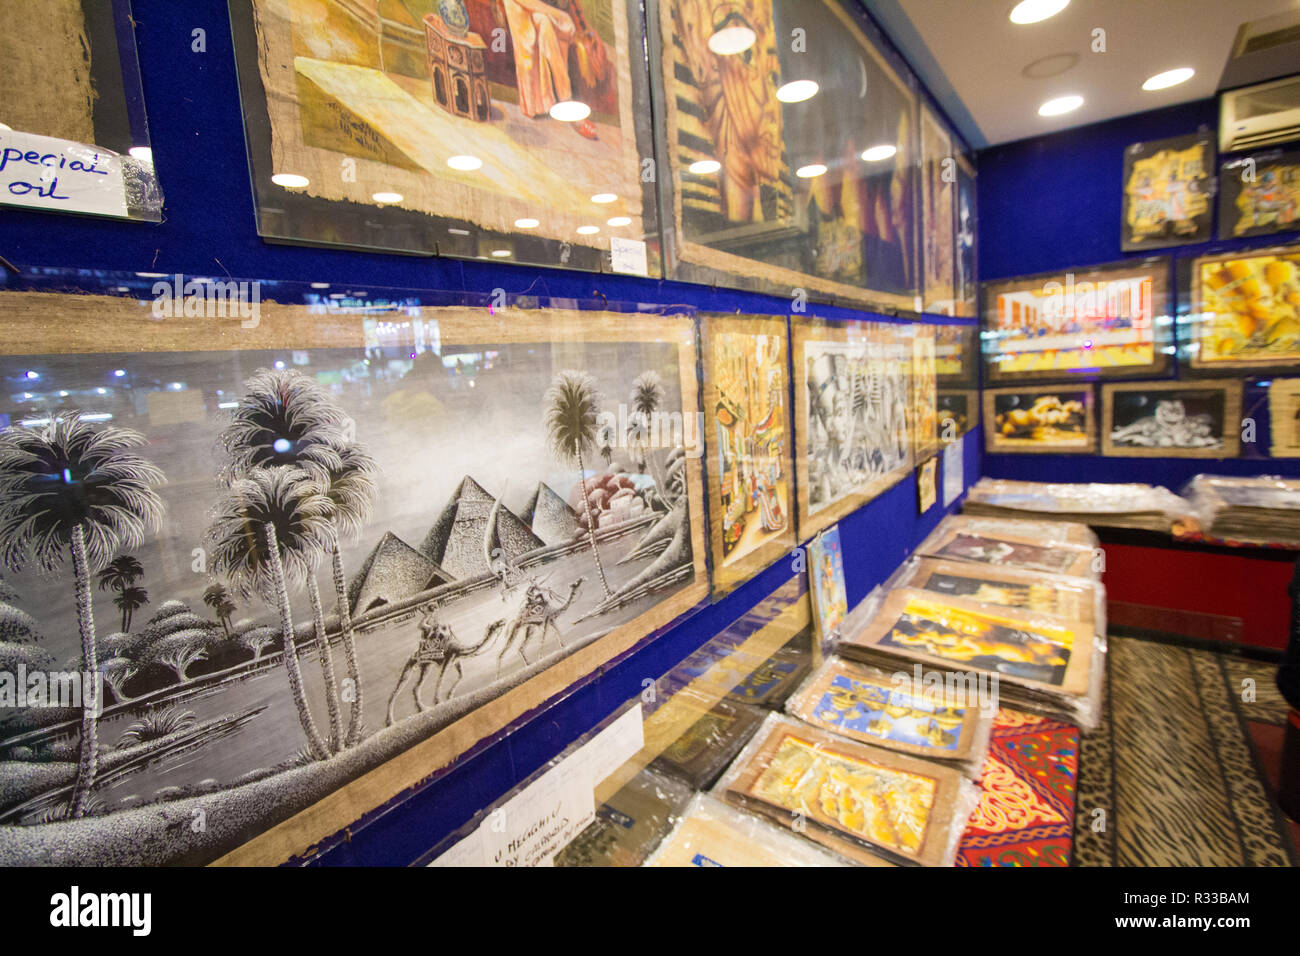 El-Shaikh Sharm, Ägypten - November 2, 2018: - Foto für die pharaonischen Gemälde shop In der ägyptischen Stadt Scharm el-Scheich, seine zeigt einige Ägyptische painti Stockfoto